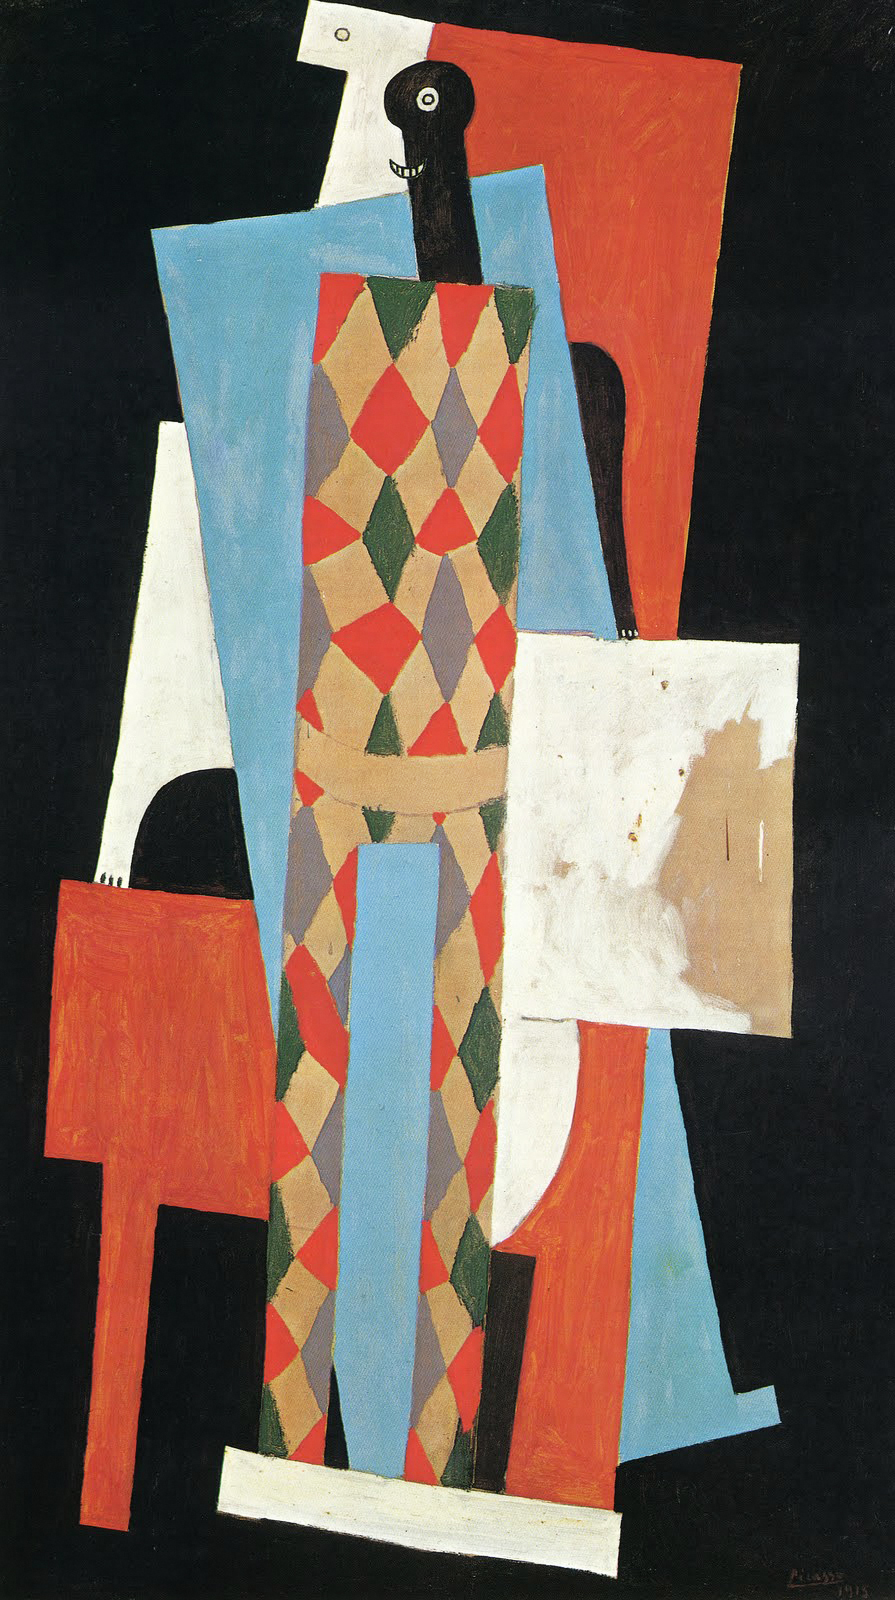 Arlequin - Pablo Picasso, 1915 